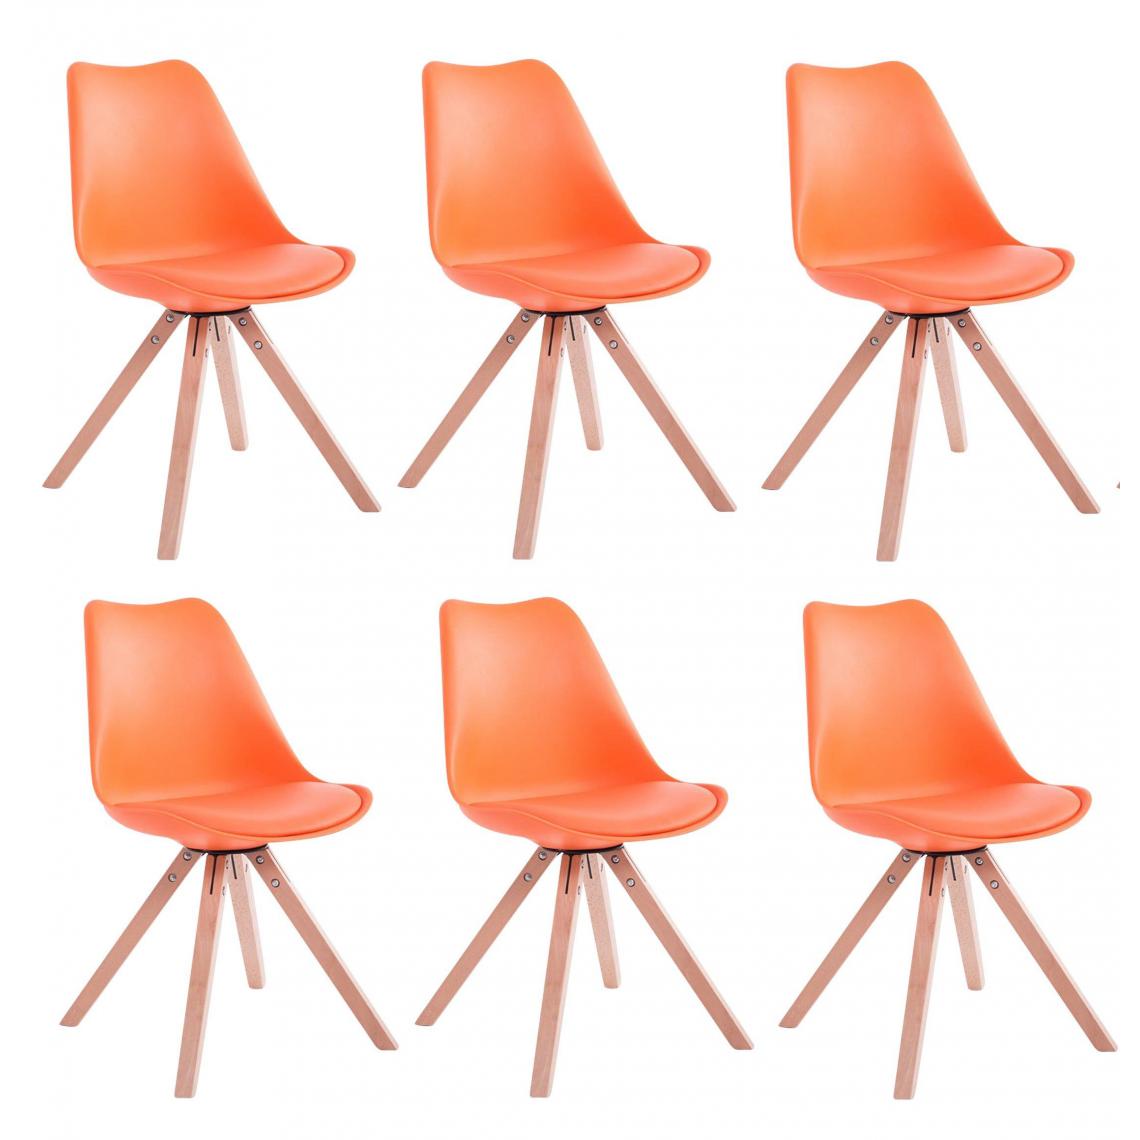 Decoshop26 - Lot de 6 chaises de salle à manger scandinave simili-cuir orange pieds bois CDS10224 - Chaises